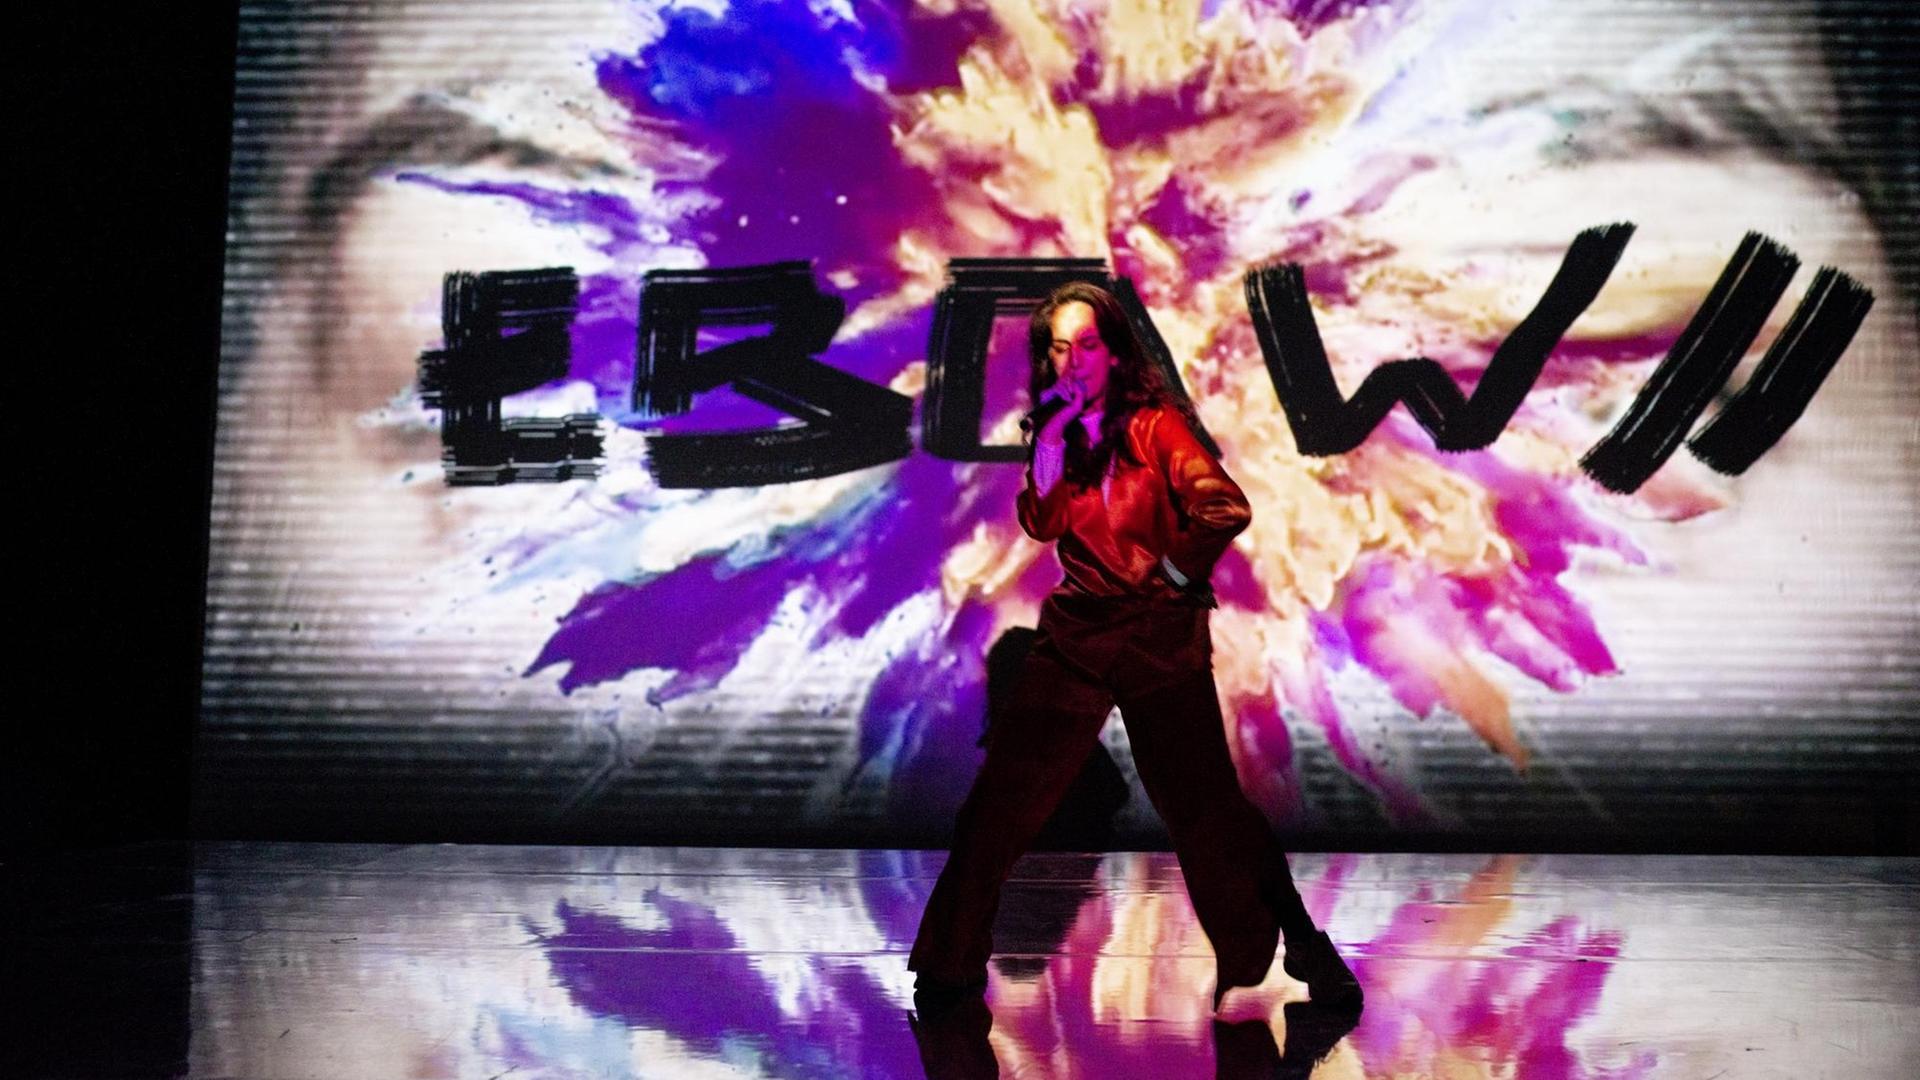 Die Künstlerin Ebow performt vor einer riesigen Leinwand. Darauf ist eine Farbexplosion zu sehen und ihr Name in schwarzen Buchstaben.